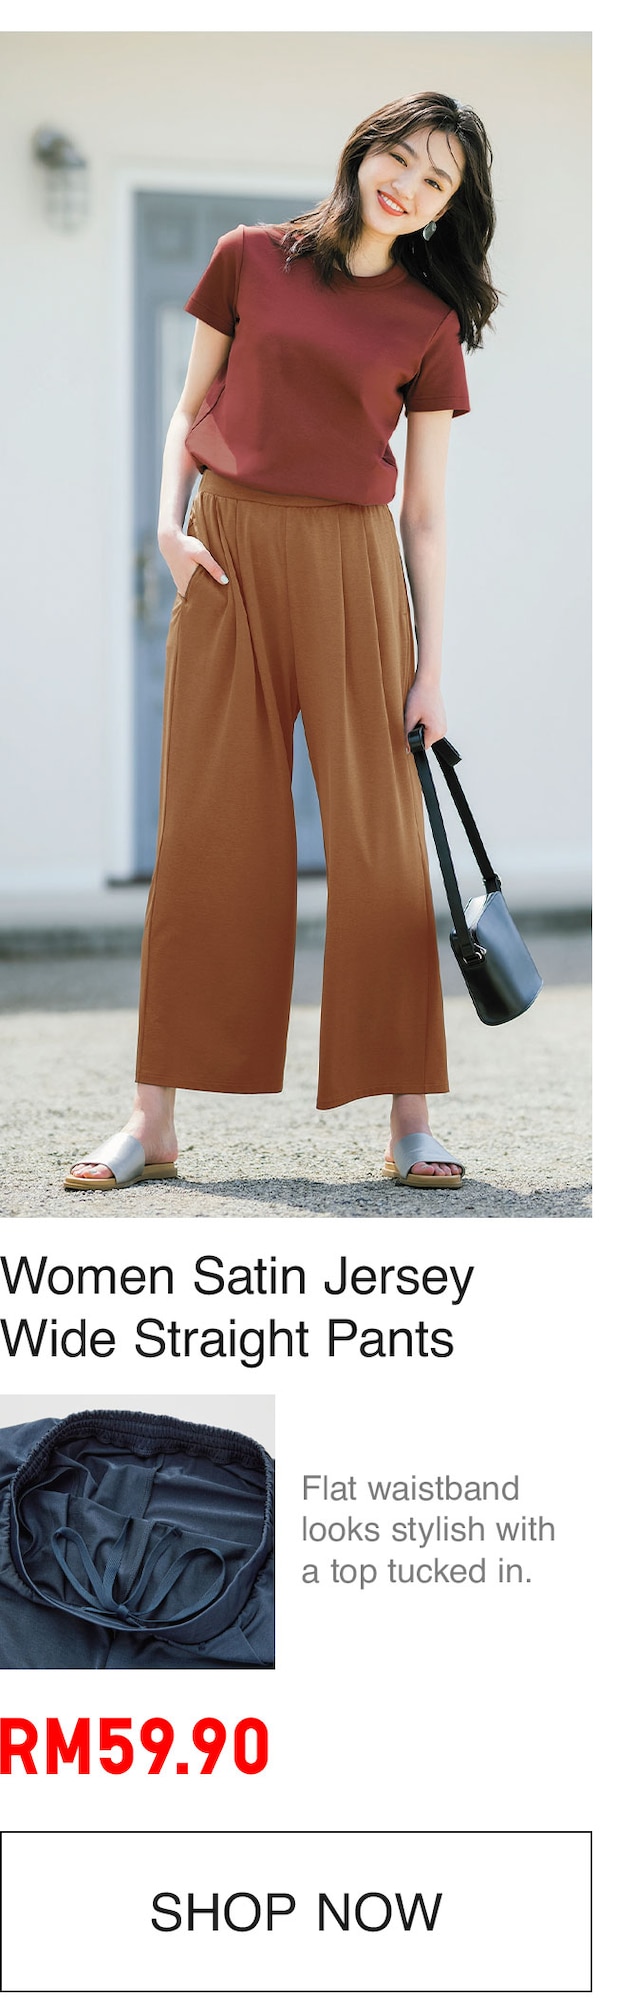 WOMEN SATIN JERSEY PANTS